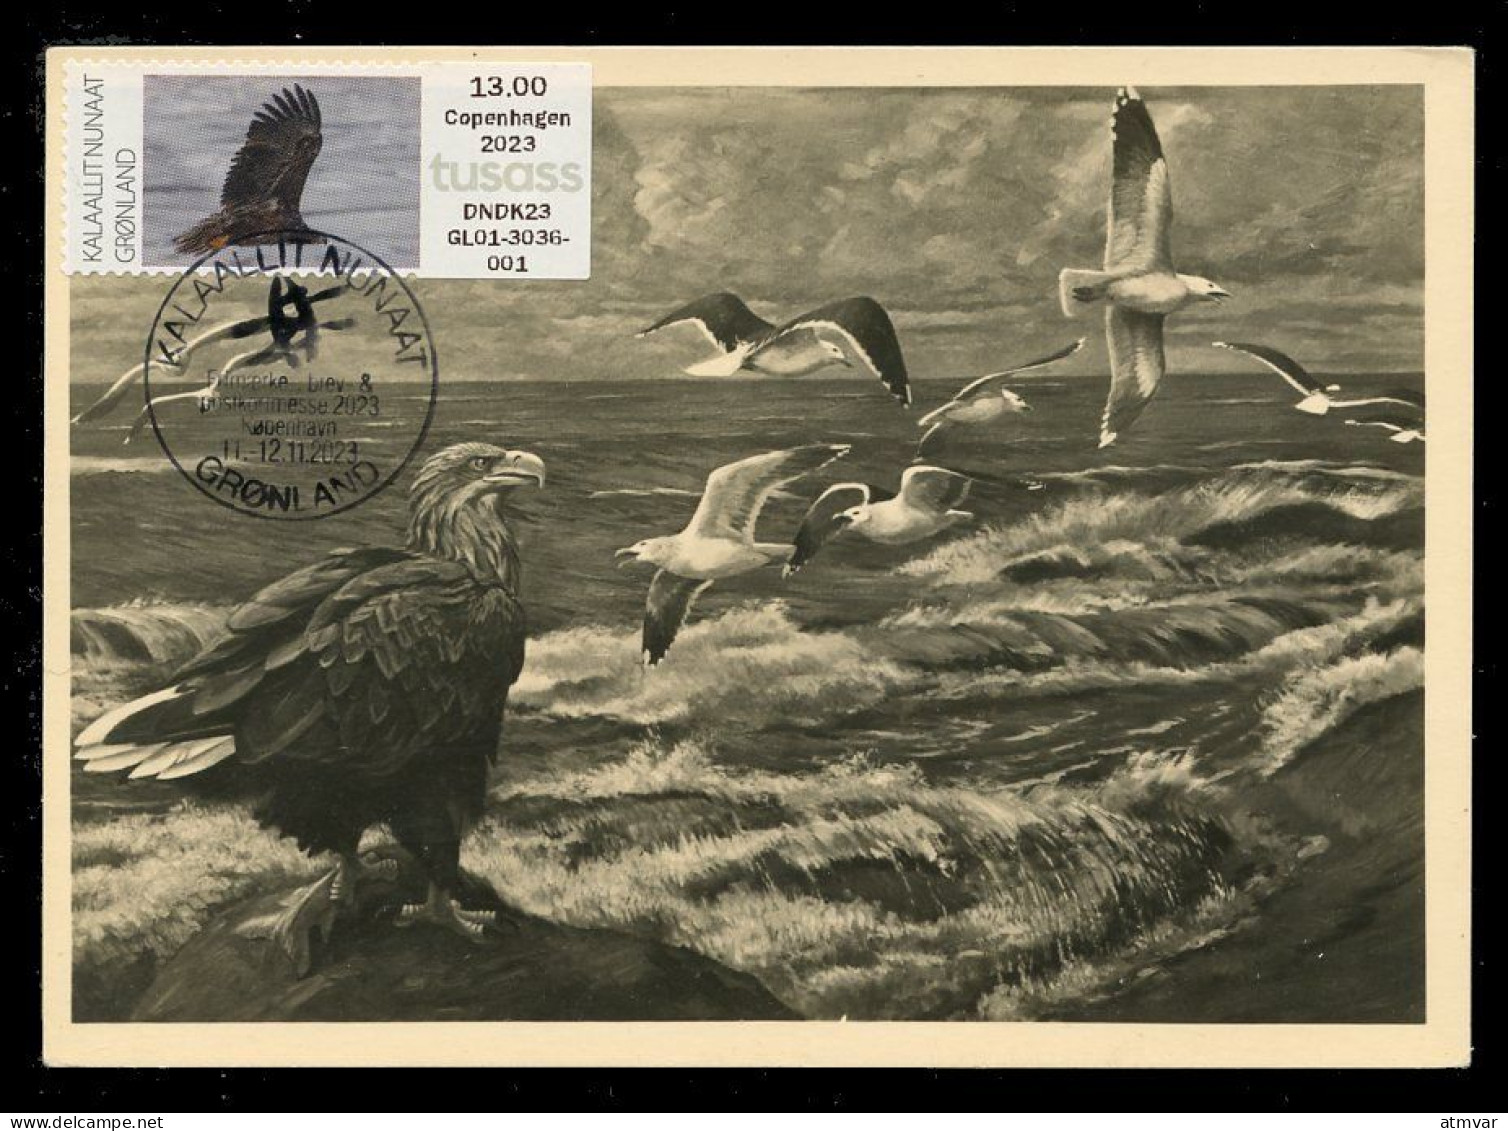 GREENLAND (2023) Carte Maximum Card ATM - White-tailed Eagle, Haliaeetus Albicilla, Pygargue à Queue Blanche, Bird Prey - Cartoline Maximum